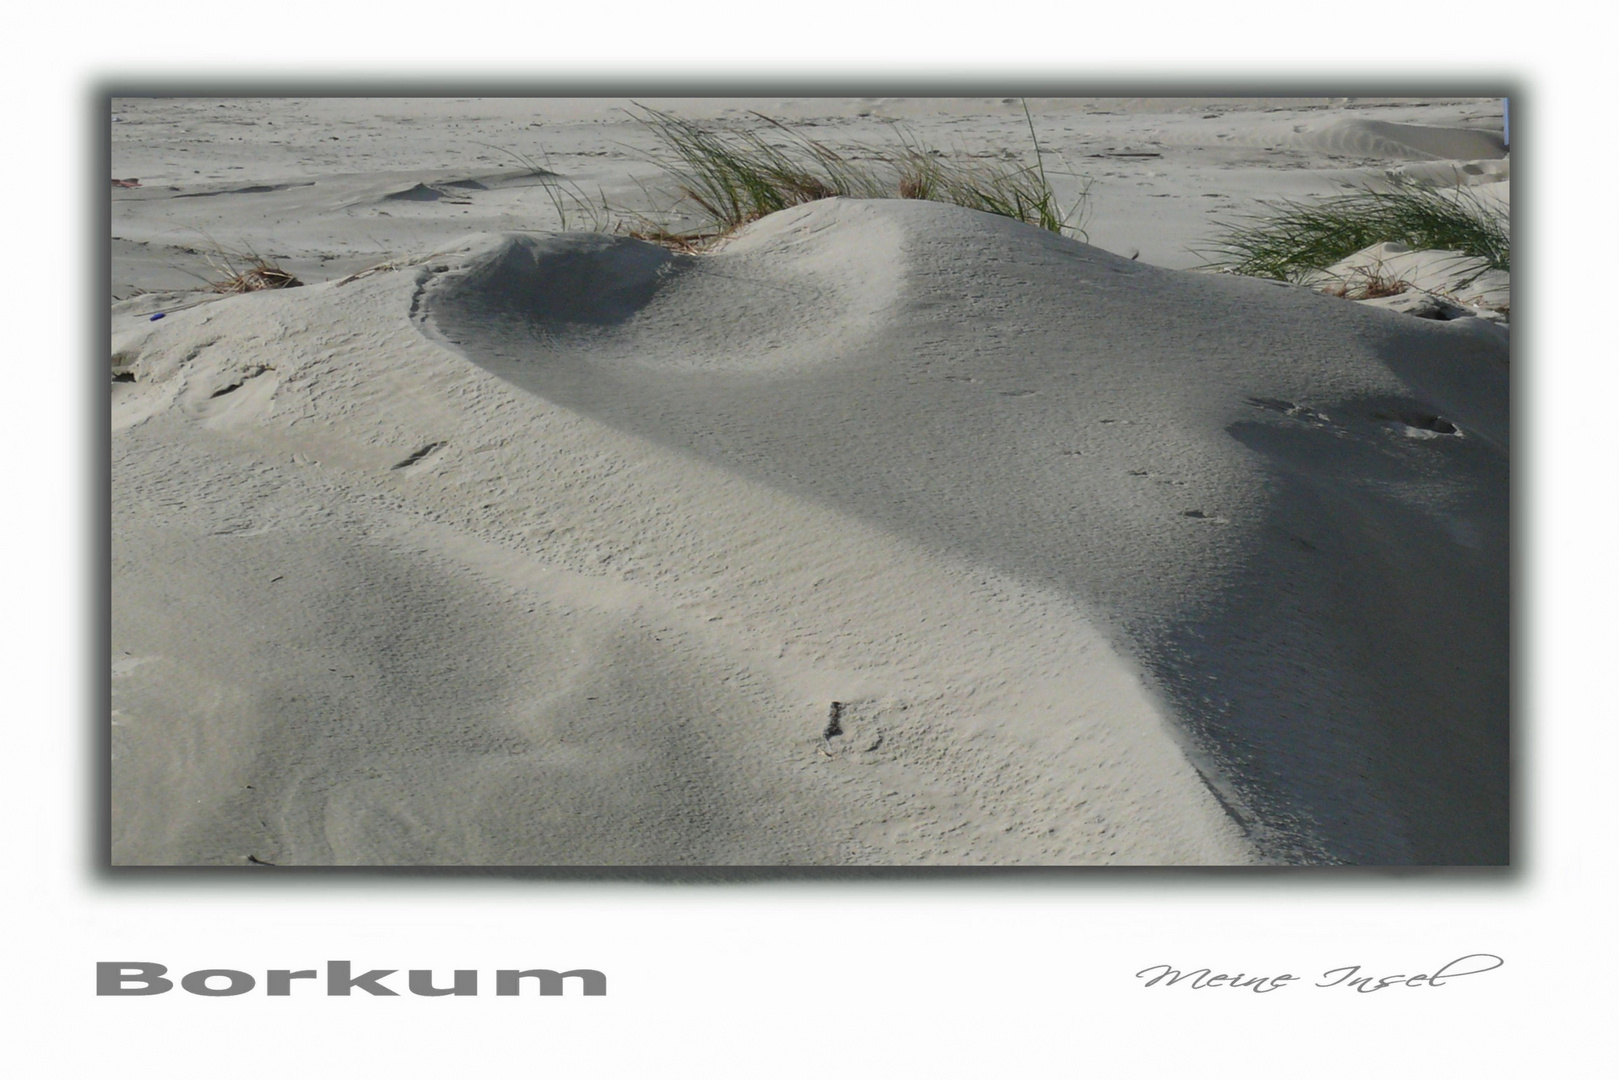 Borkum - Ein herzlicher Gruß von der Insel